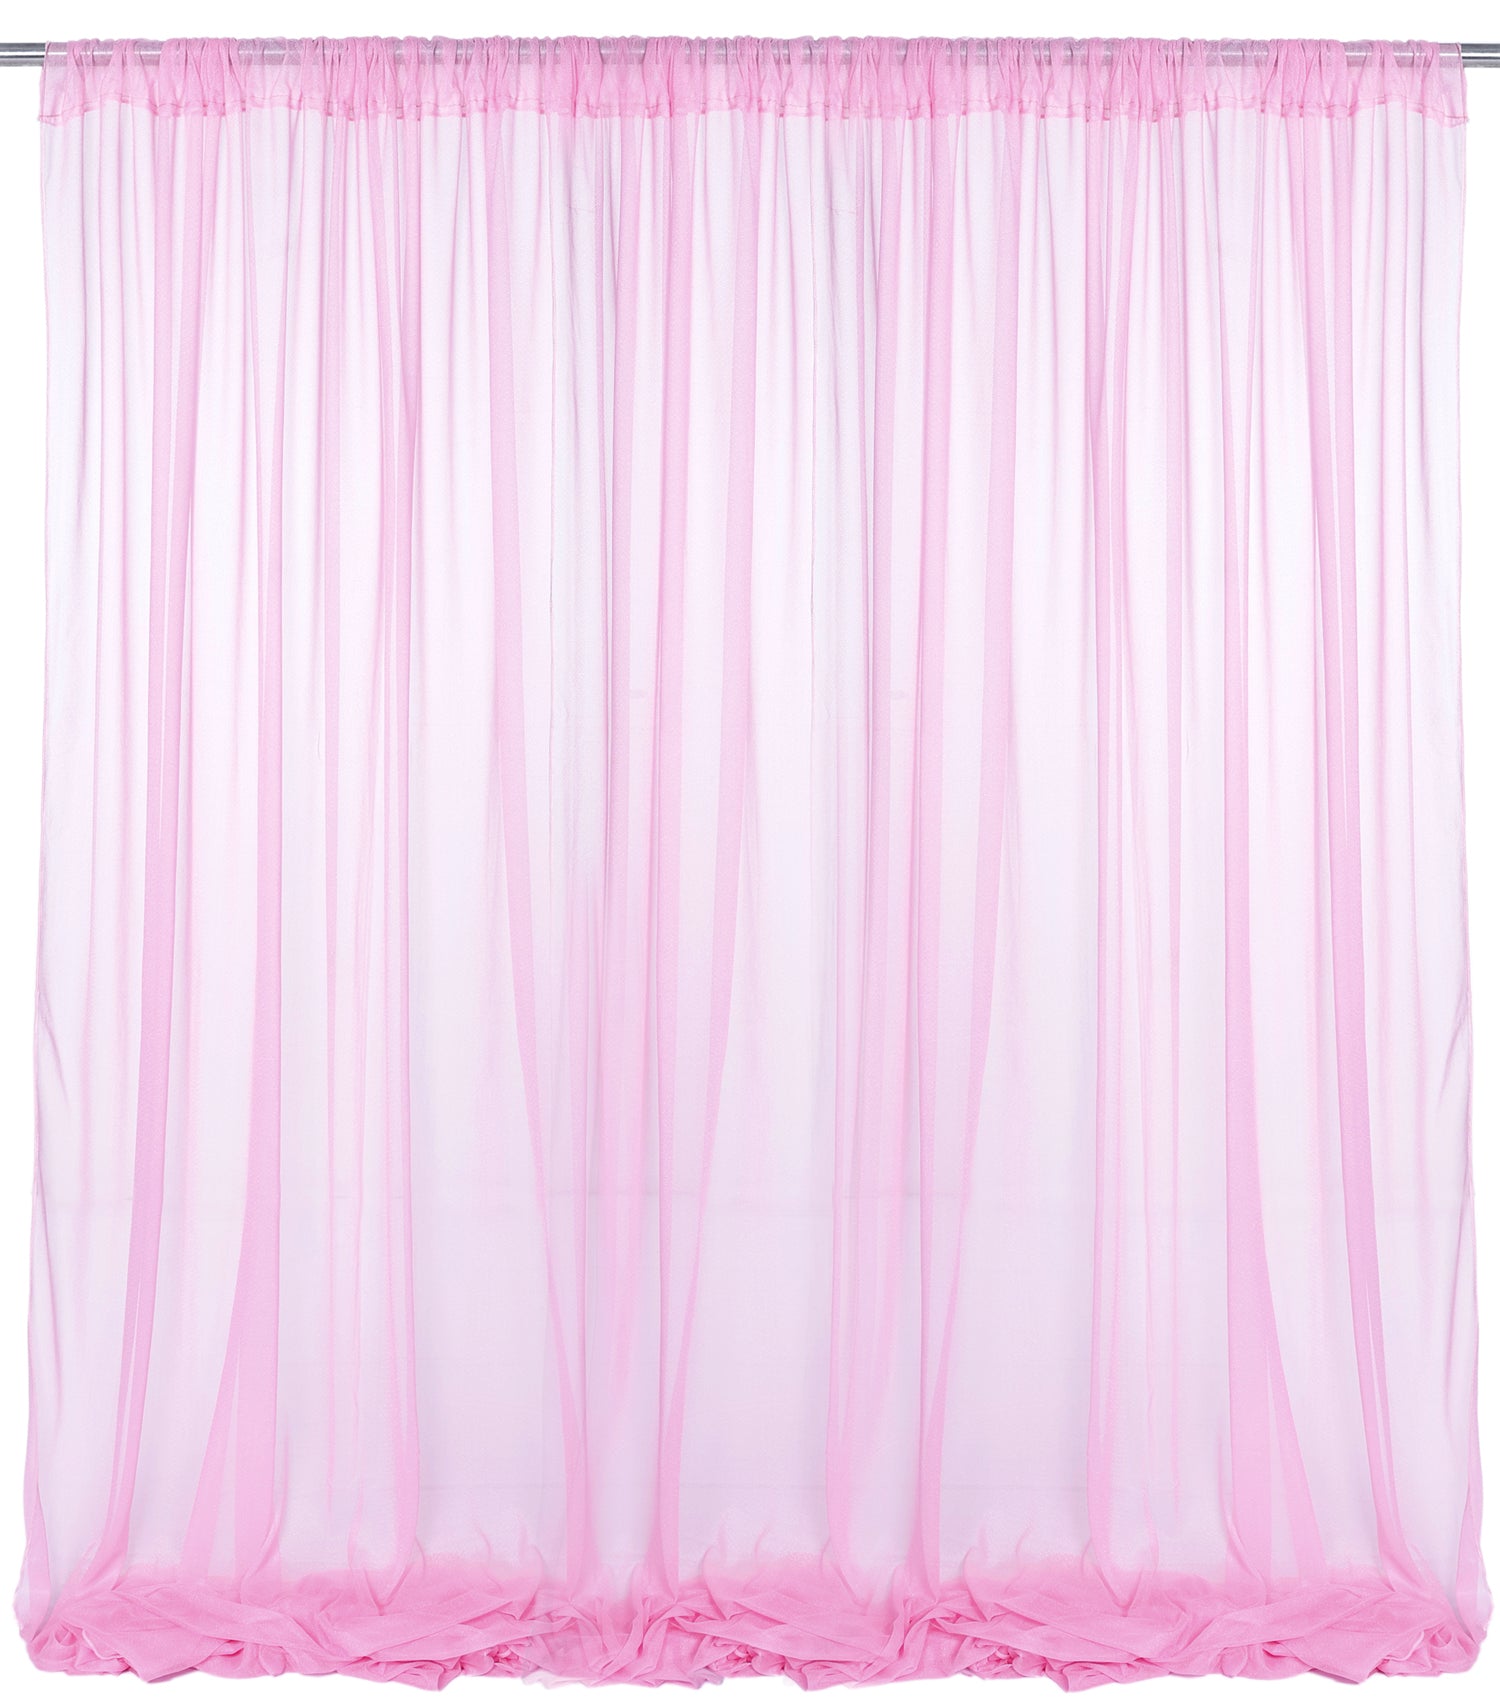 Bubblegum Pink,f9e1d40f-764b-4950-8a90-6b5ce5db116c